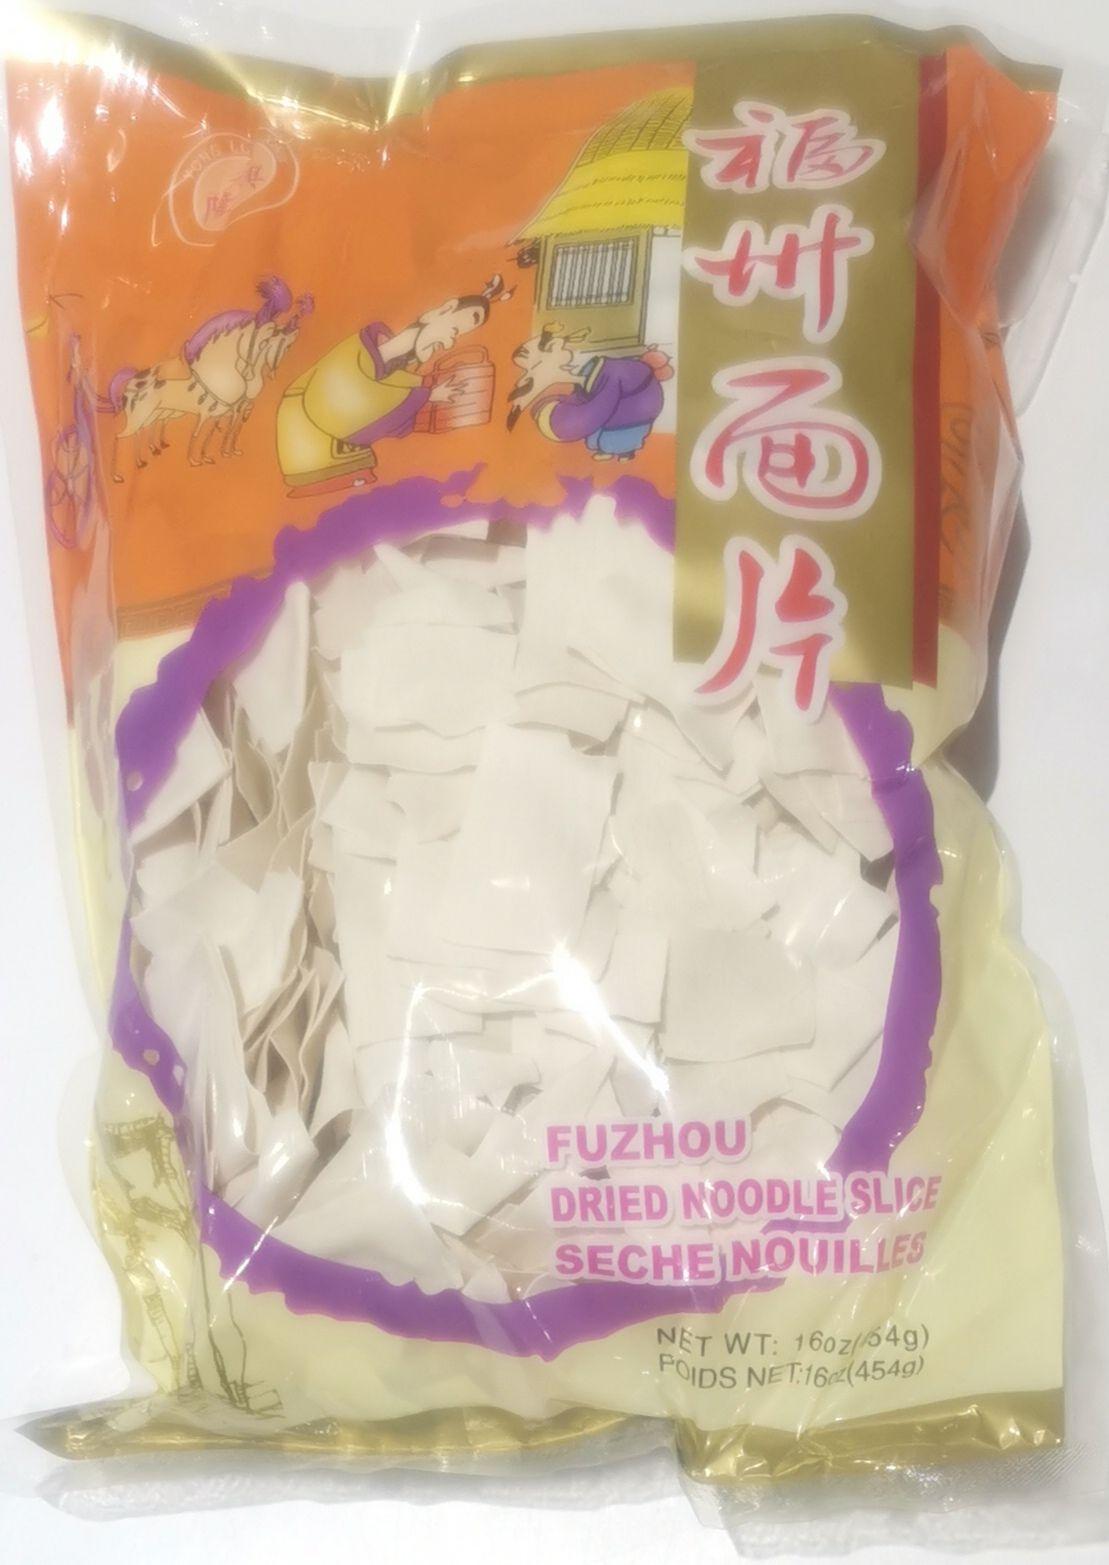 yong-long-xing-fu-zhou-dried-noodle-slice